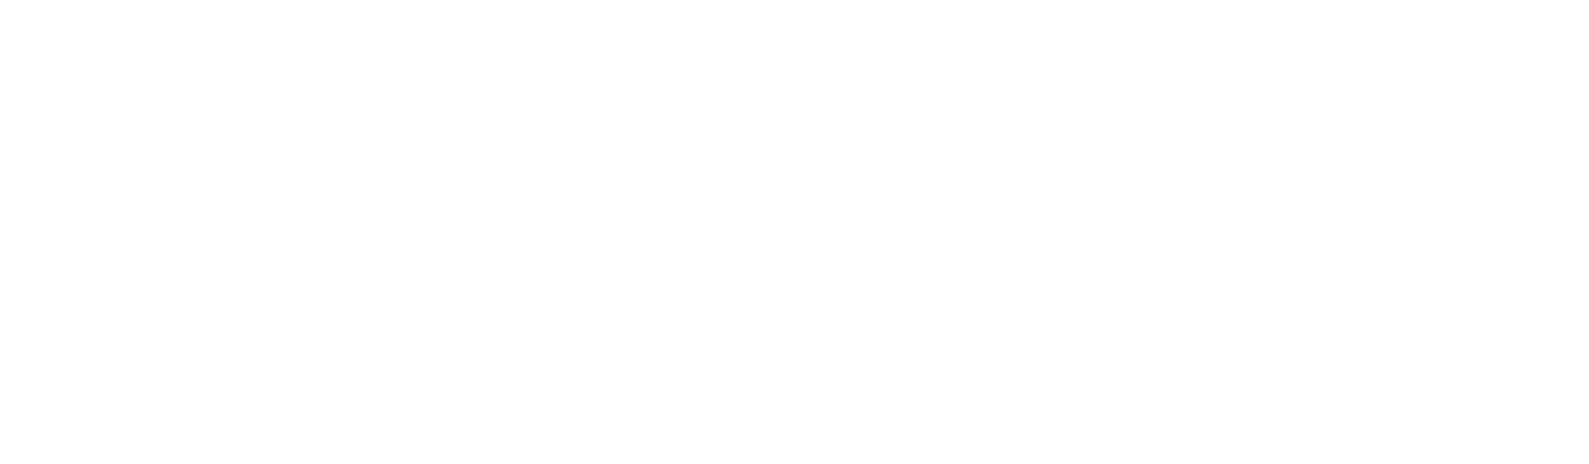 EQT logo for dark backgrounds (transparent PNG)